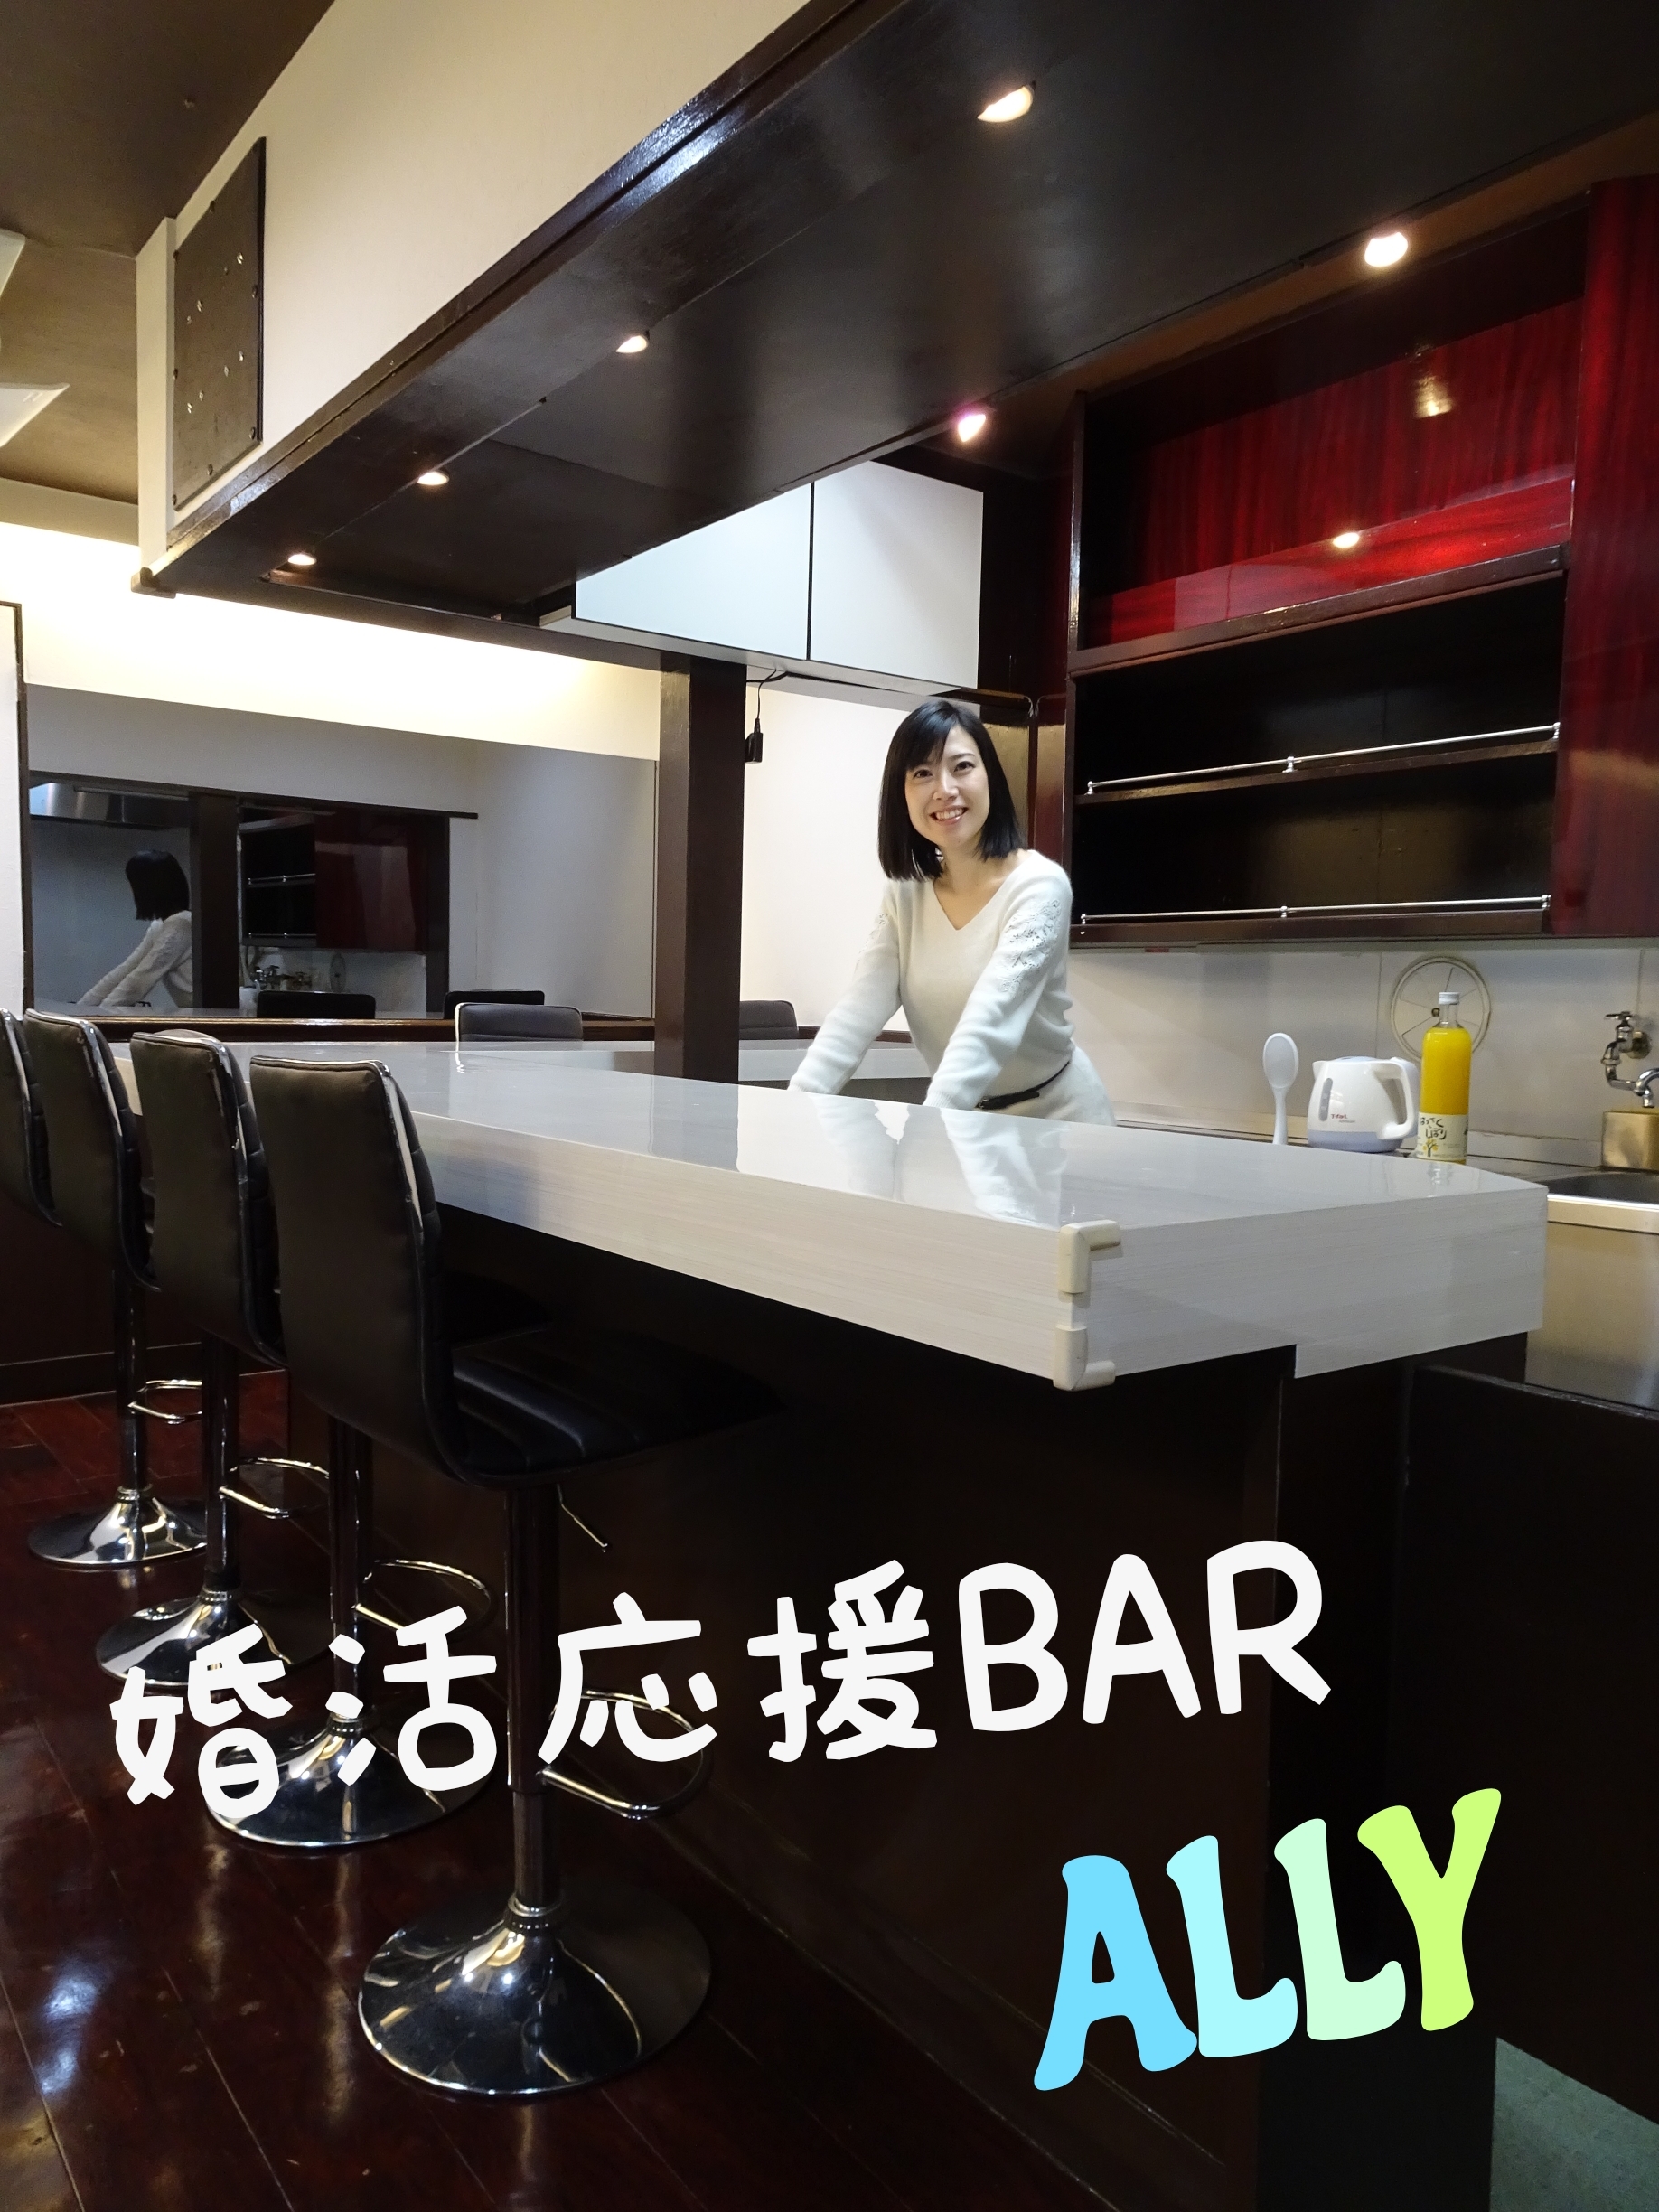 婚活応援bar Ally Open 1 29プレオープン 2 1グランドオープン 株式会社raitaiのプレスリリース